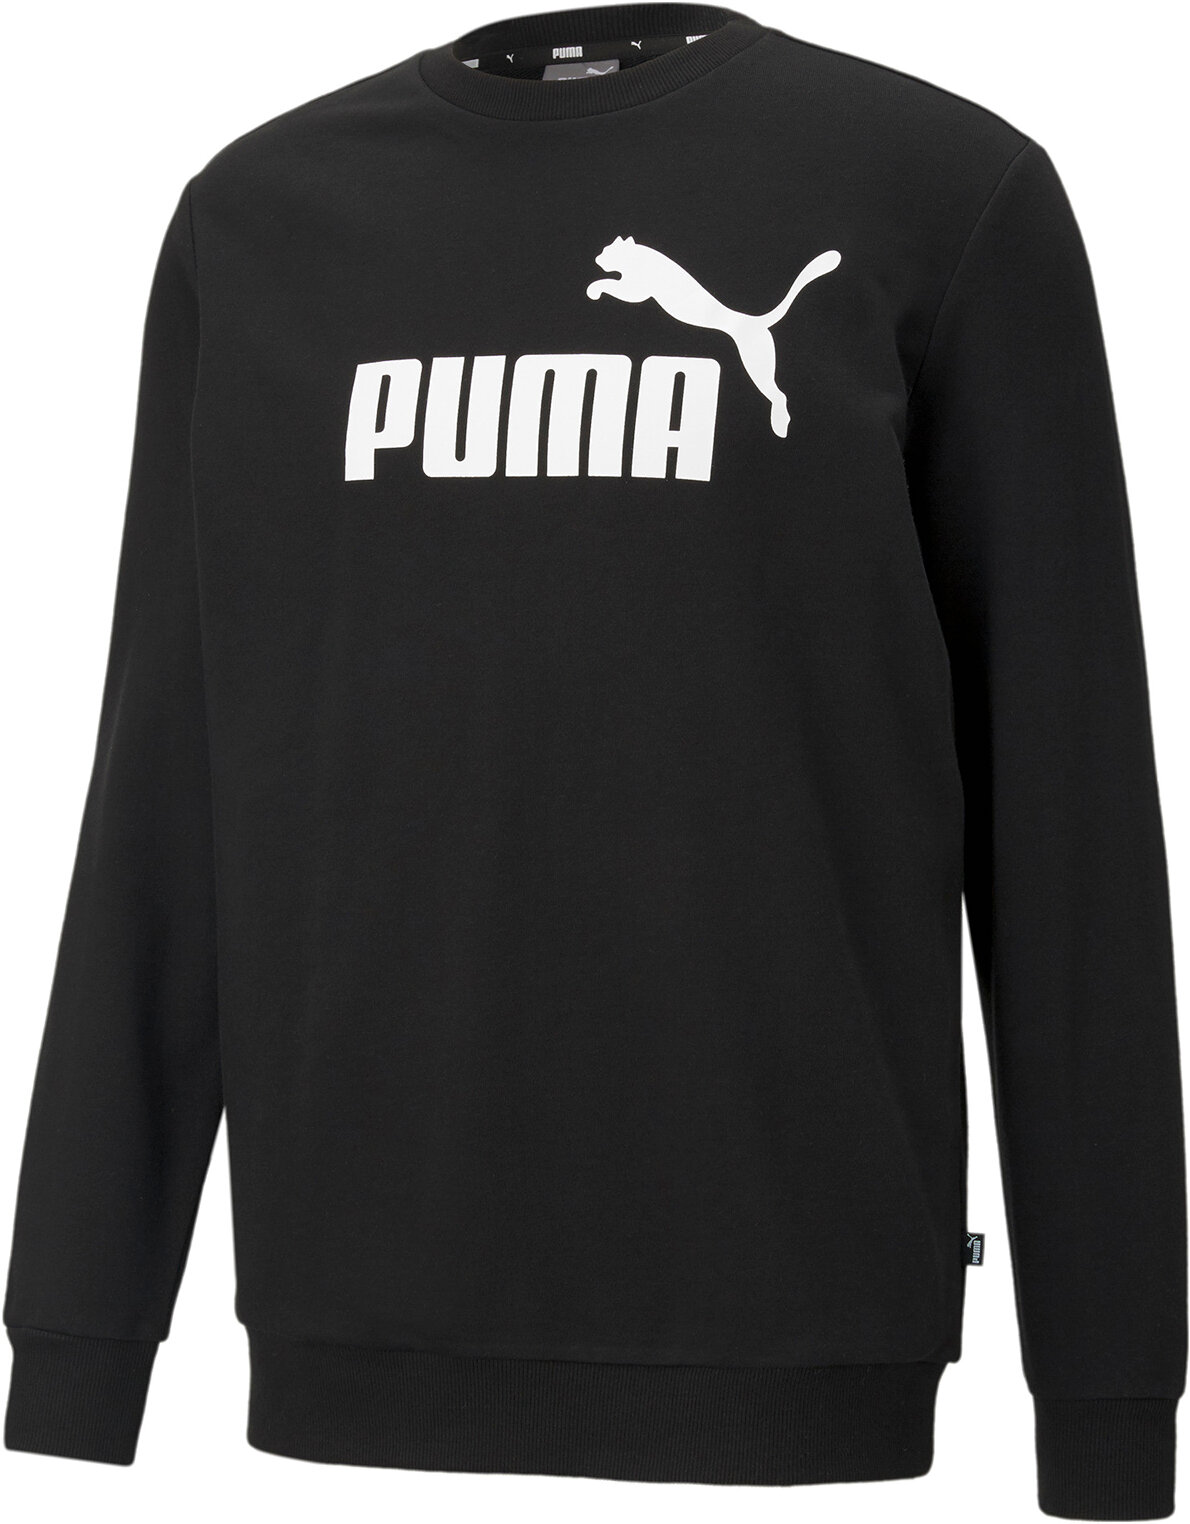 Свитшот спортивный PUMA Essentials Big Logo Crew Men’s Sweater